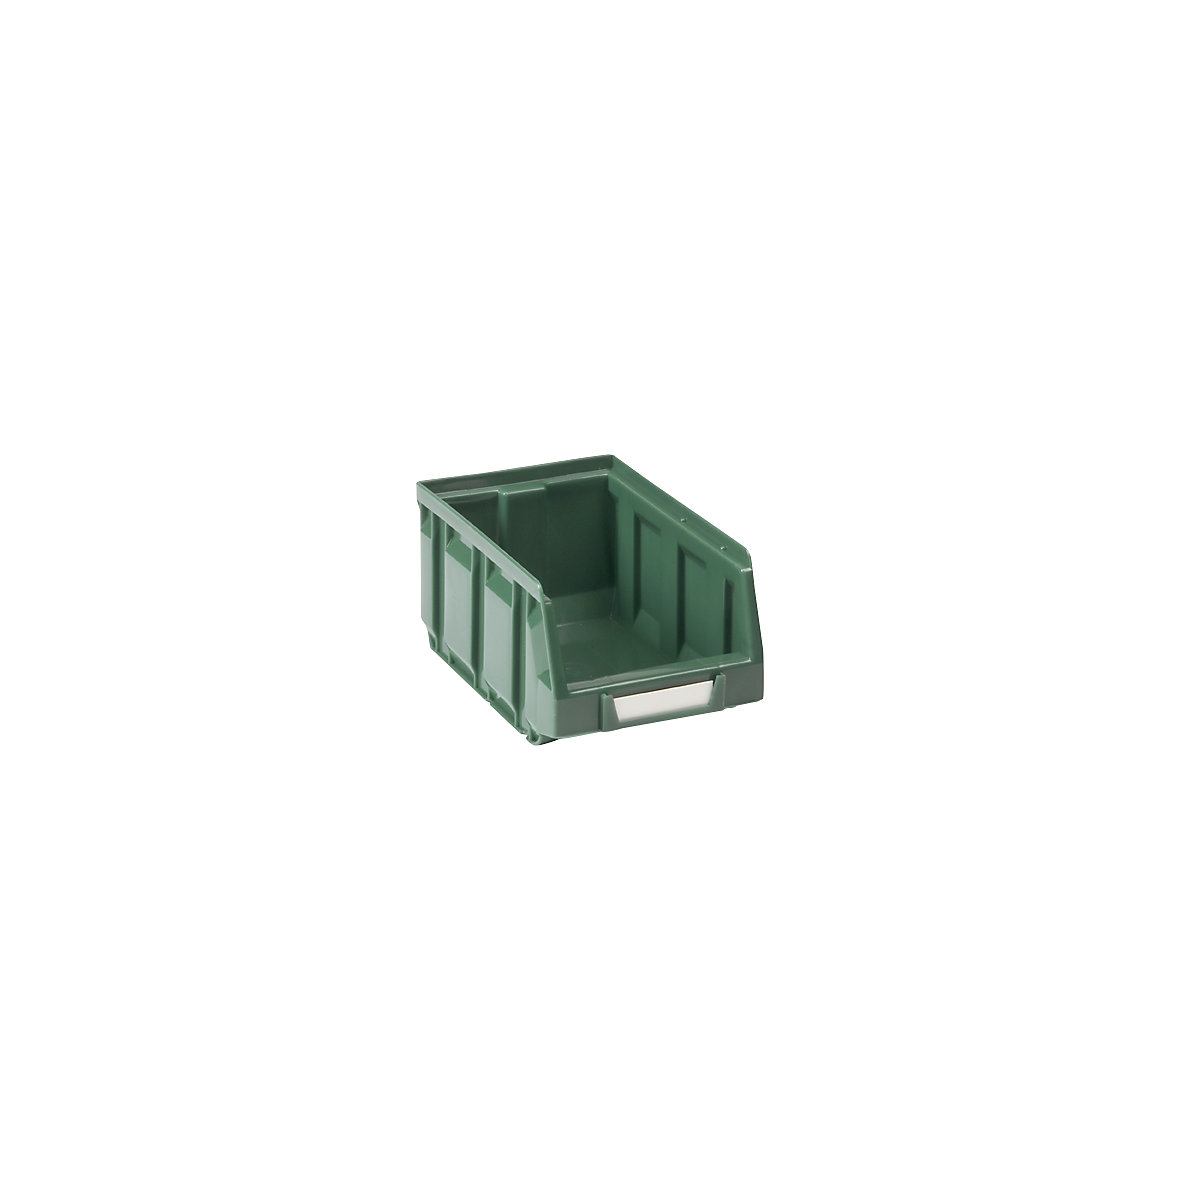 Otvorena skladišna kutija od polietilena, DxŠxV 167 x 105 x 82 mm, u zelenoj boji, pak. 48 kom.-10